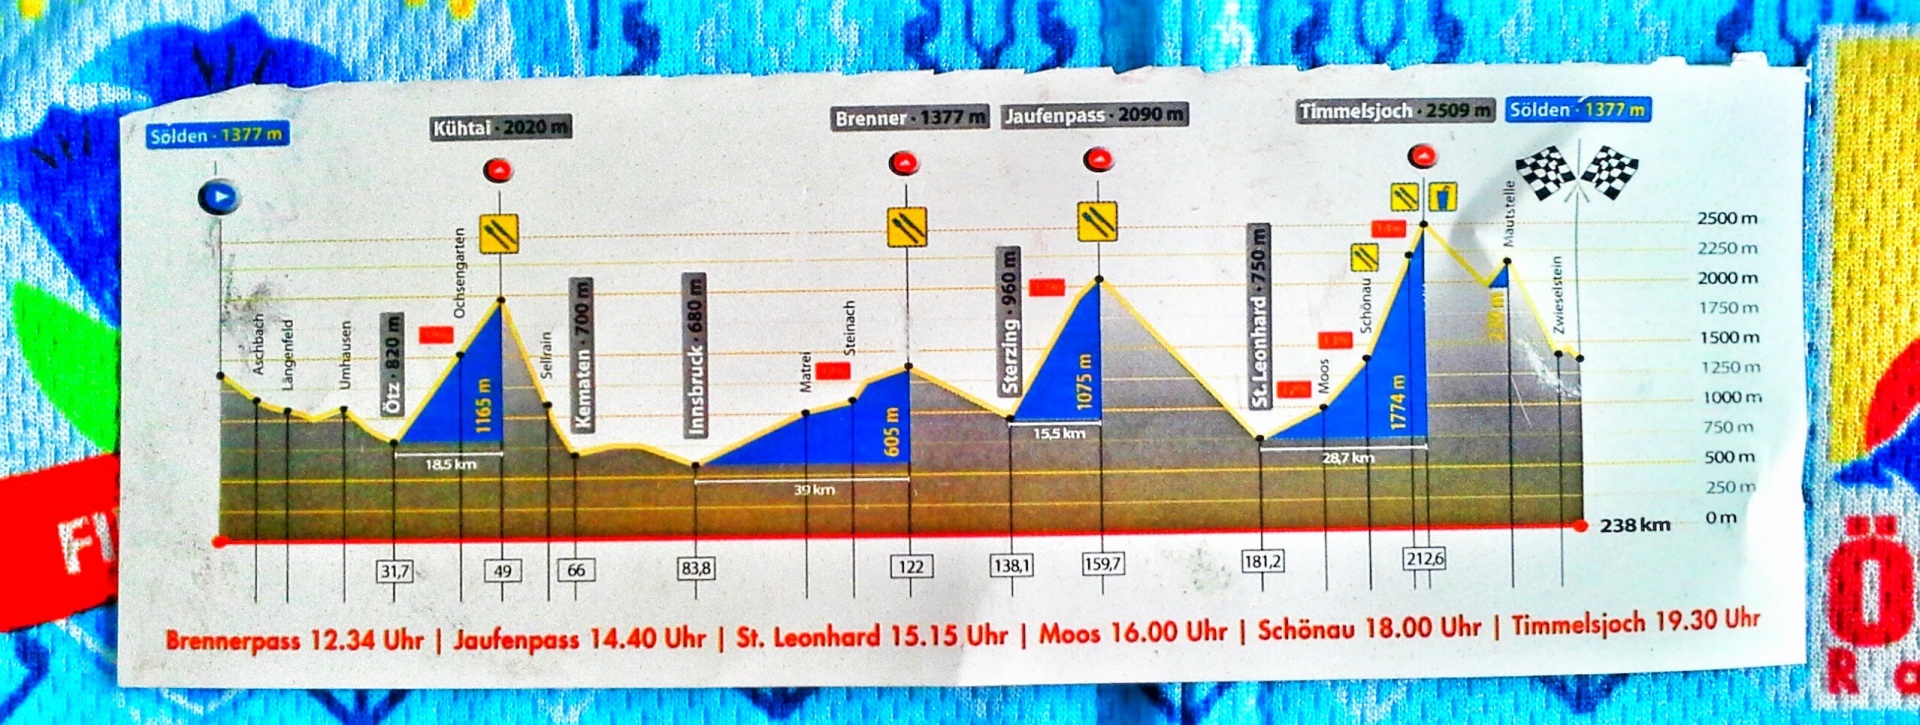 Die Strecke des Ötztaler Radmarathons.